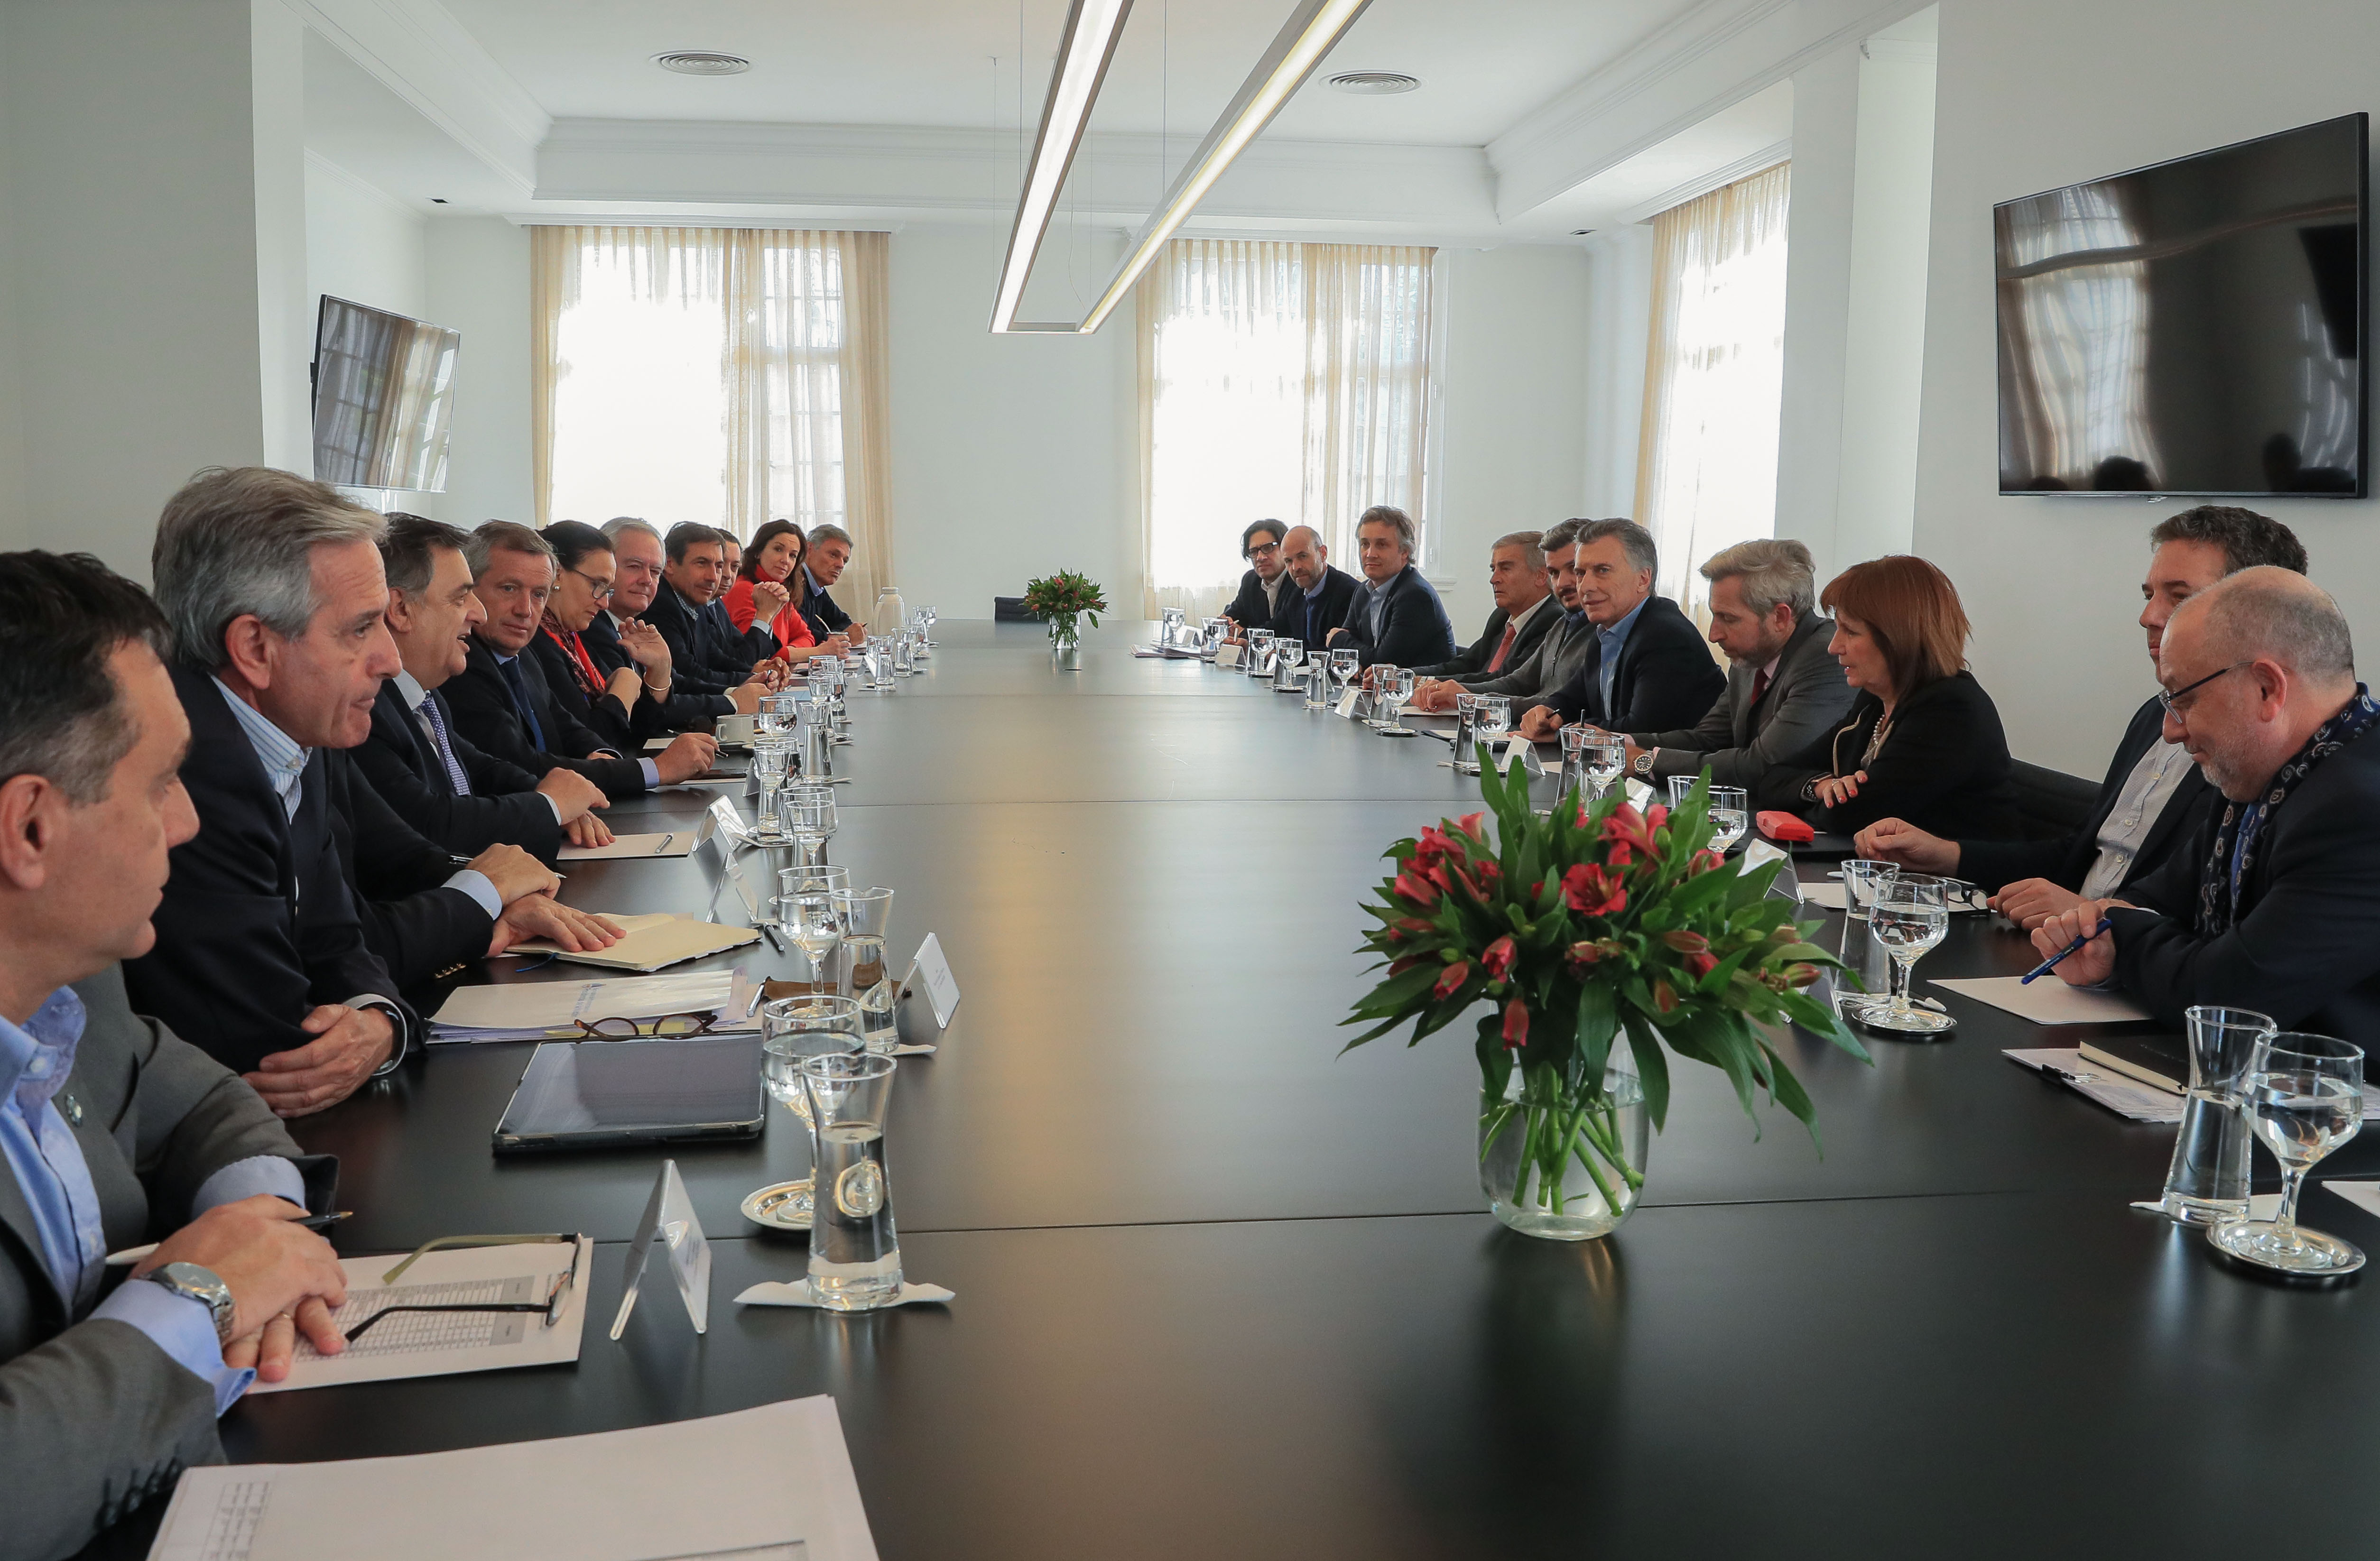 El presidente Macri encabezó una reunión de Gabinete nacional